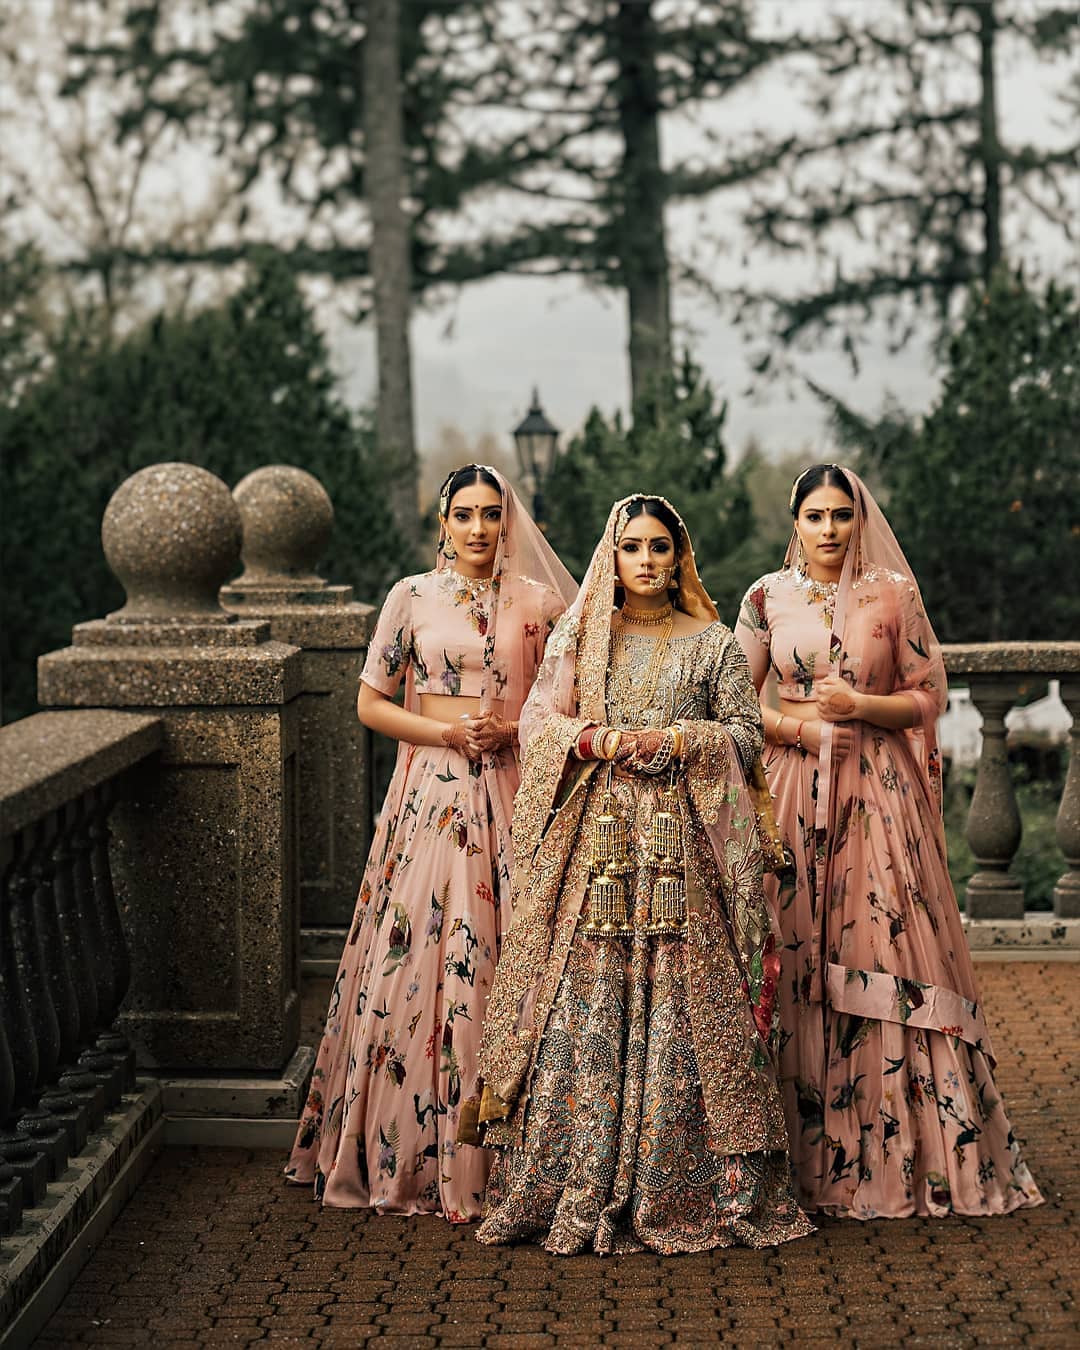 dress up your Indian bridesmaids ...